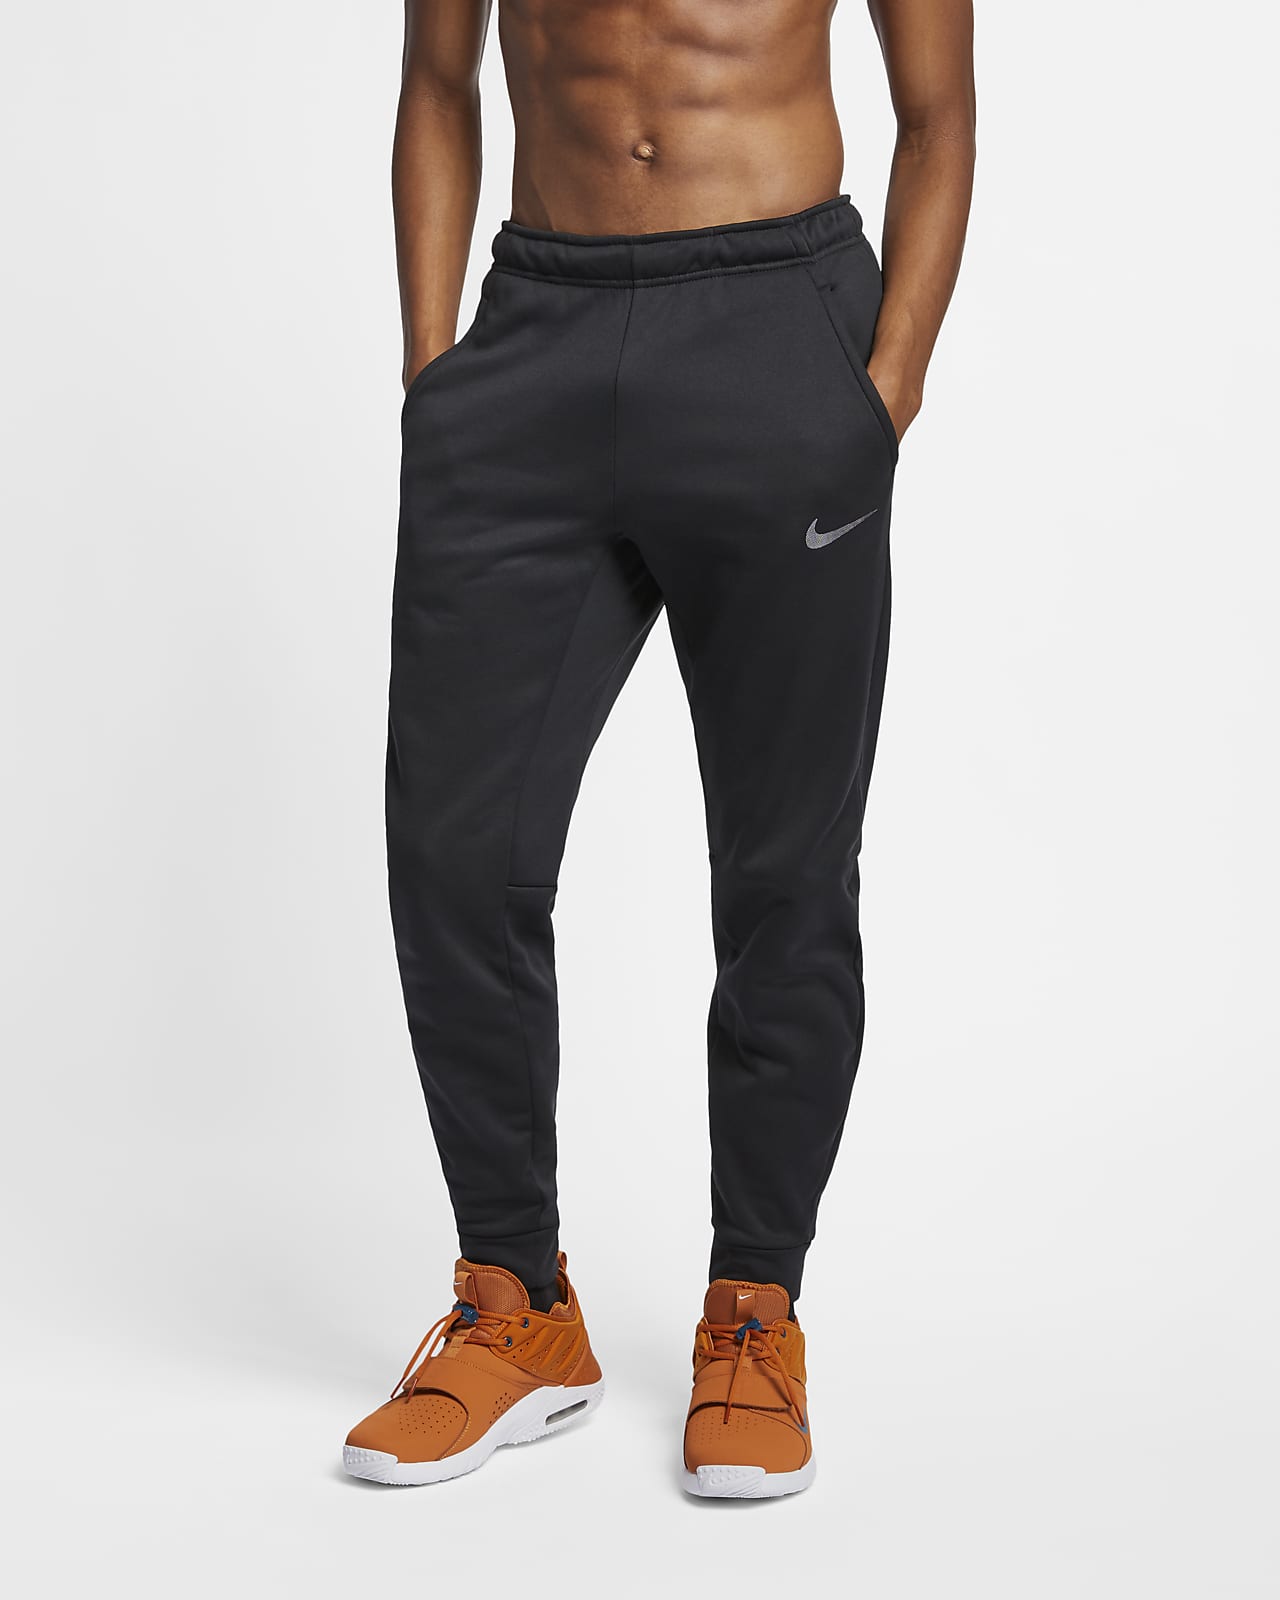 men's nike workout pants